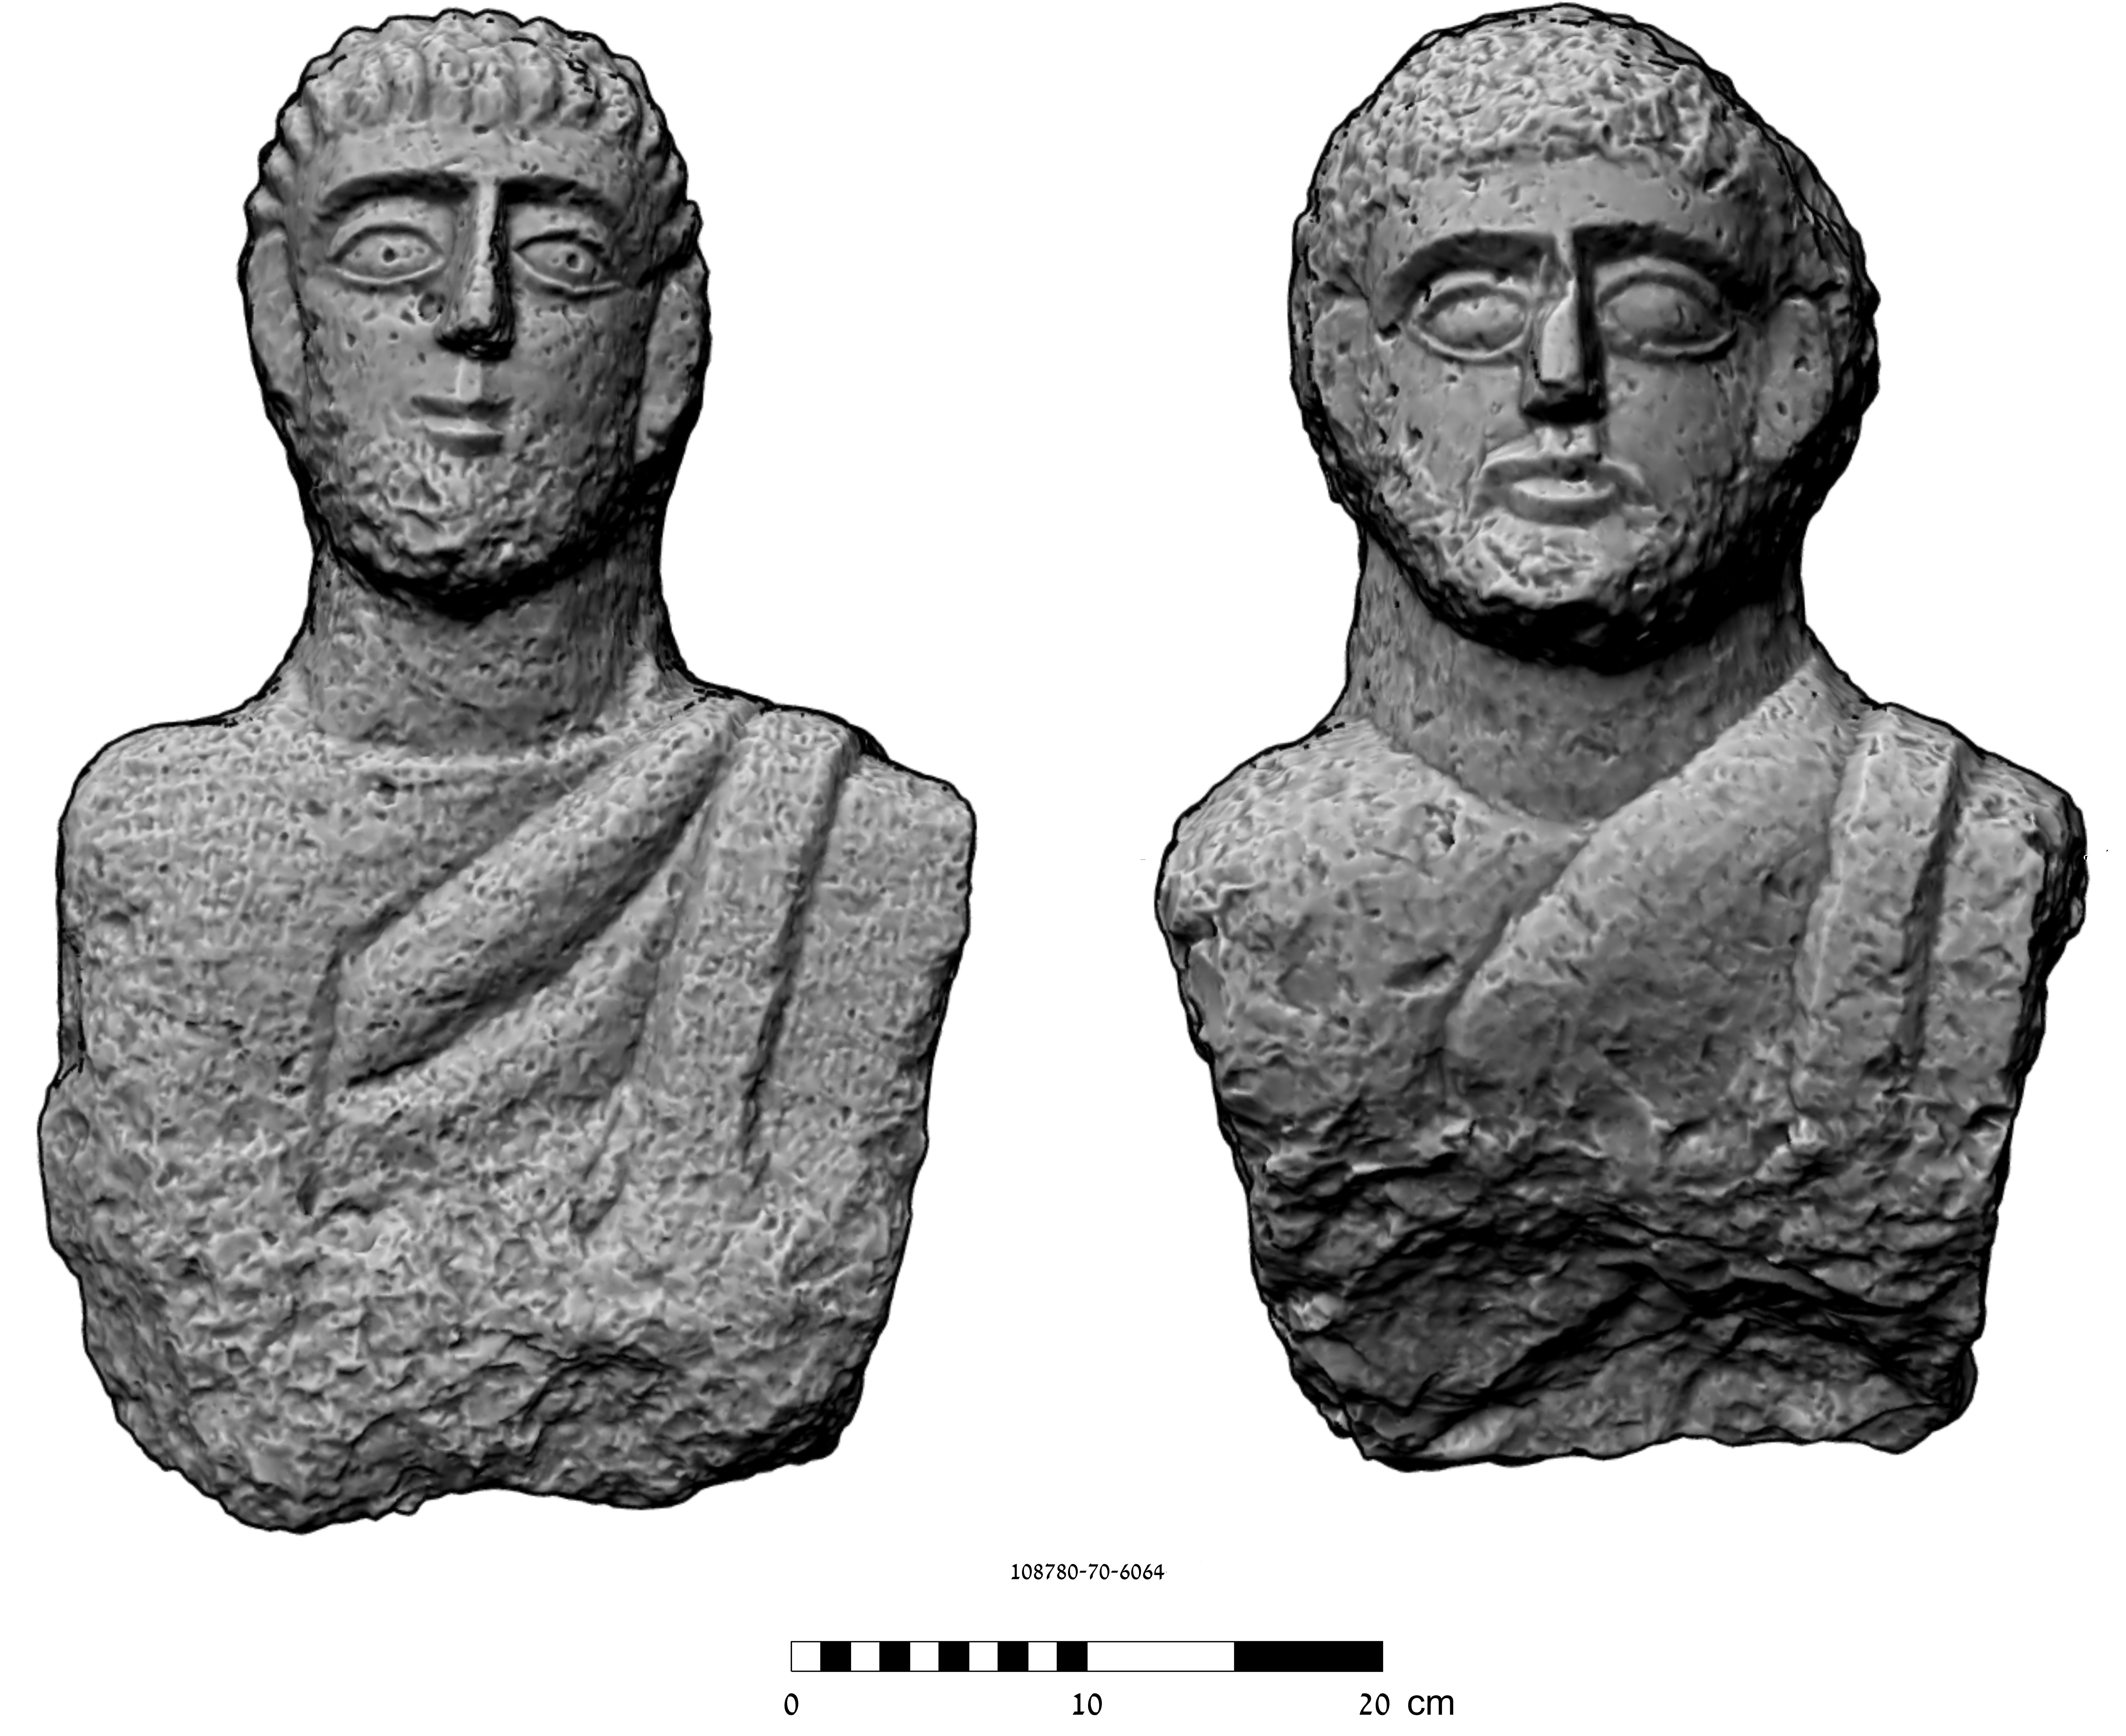 צילום תלת מימד של הפסלים: ארגיטה ג'רמן-לבנון, המעבדה הלאומית לתיעוד ומחקר דיגיטאלי בארכיאולוגיה